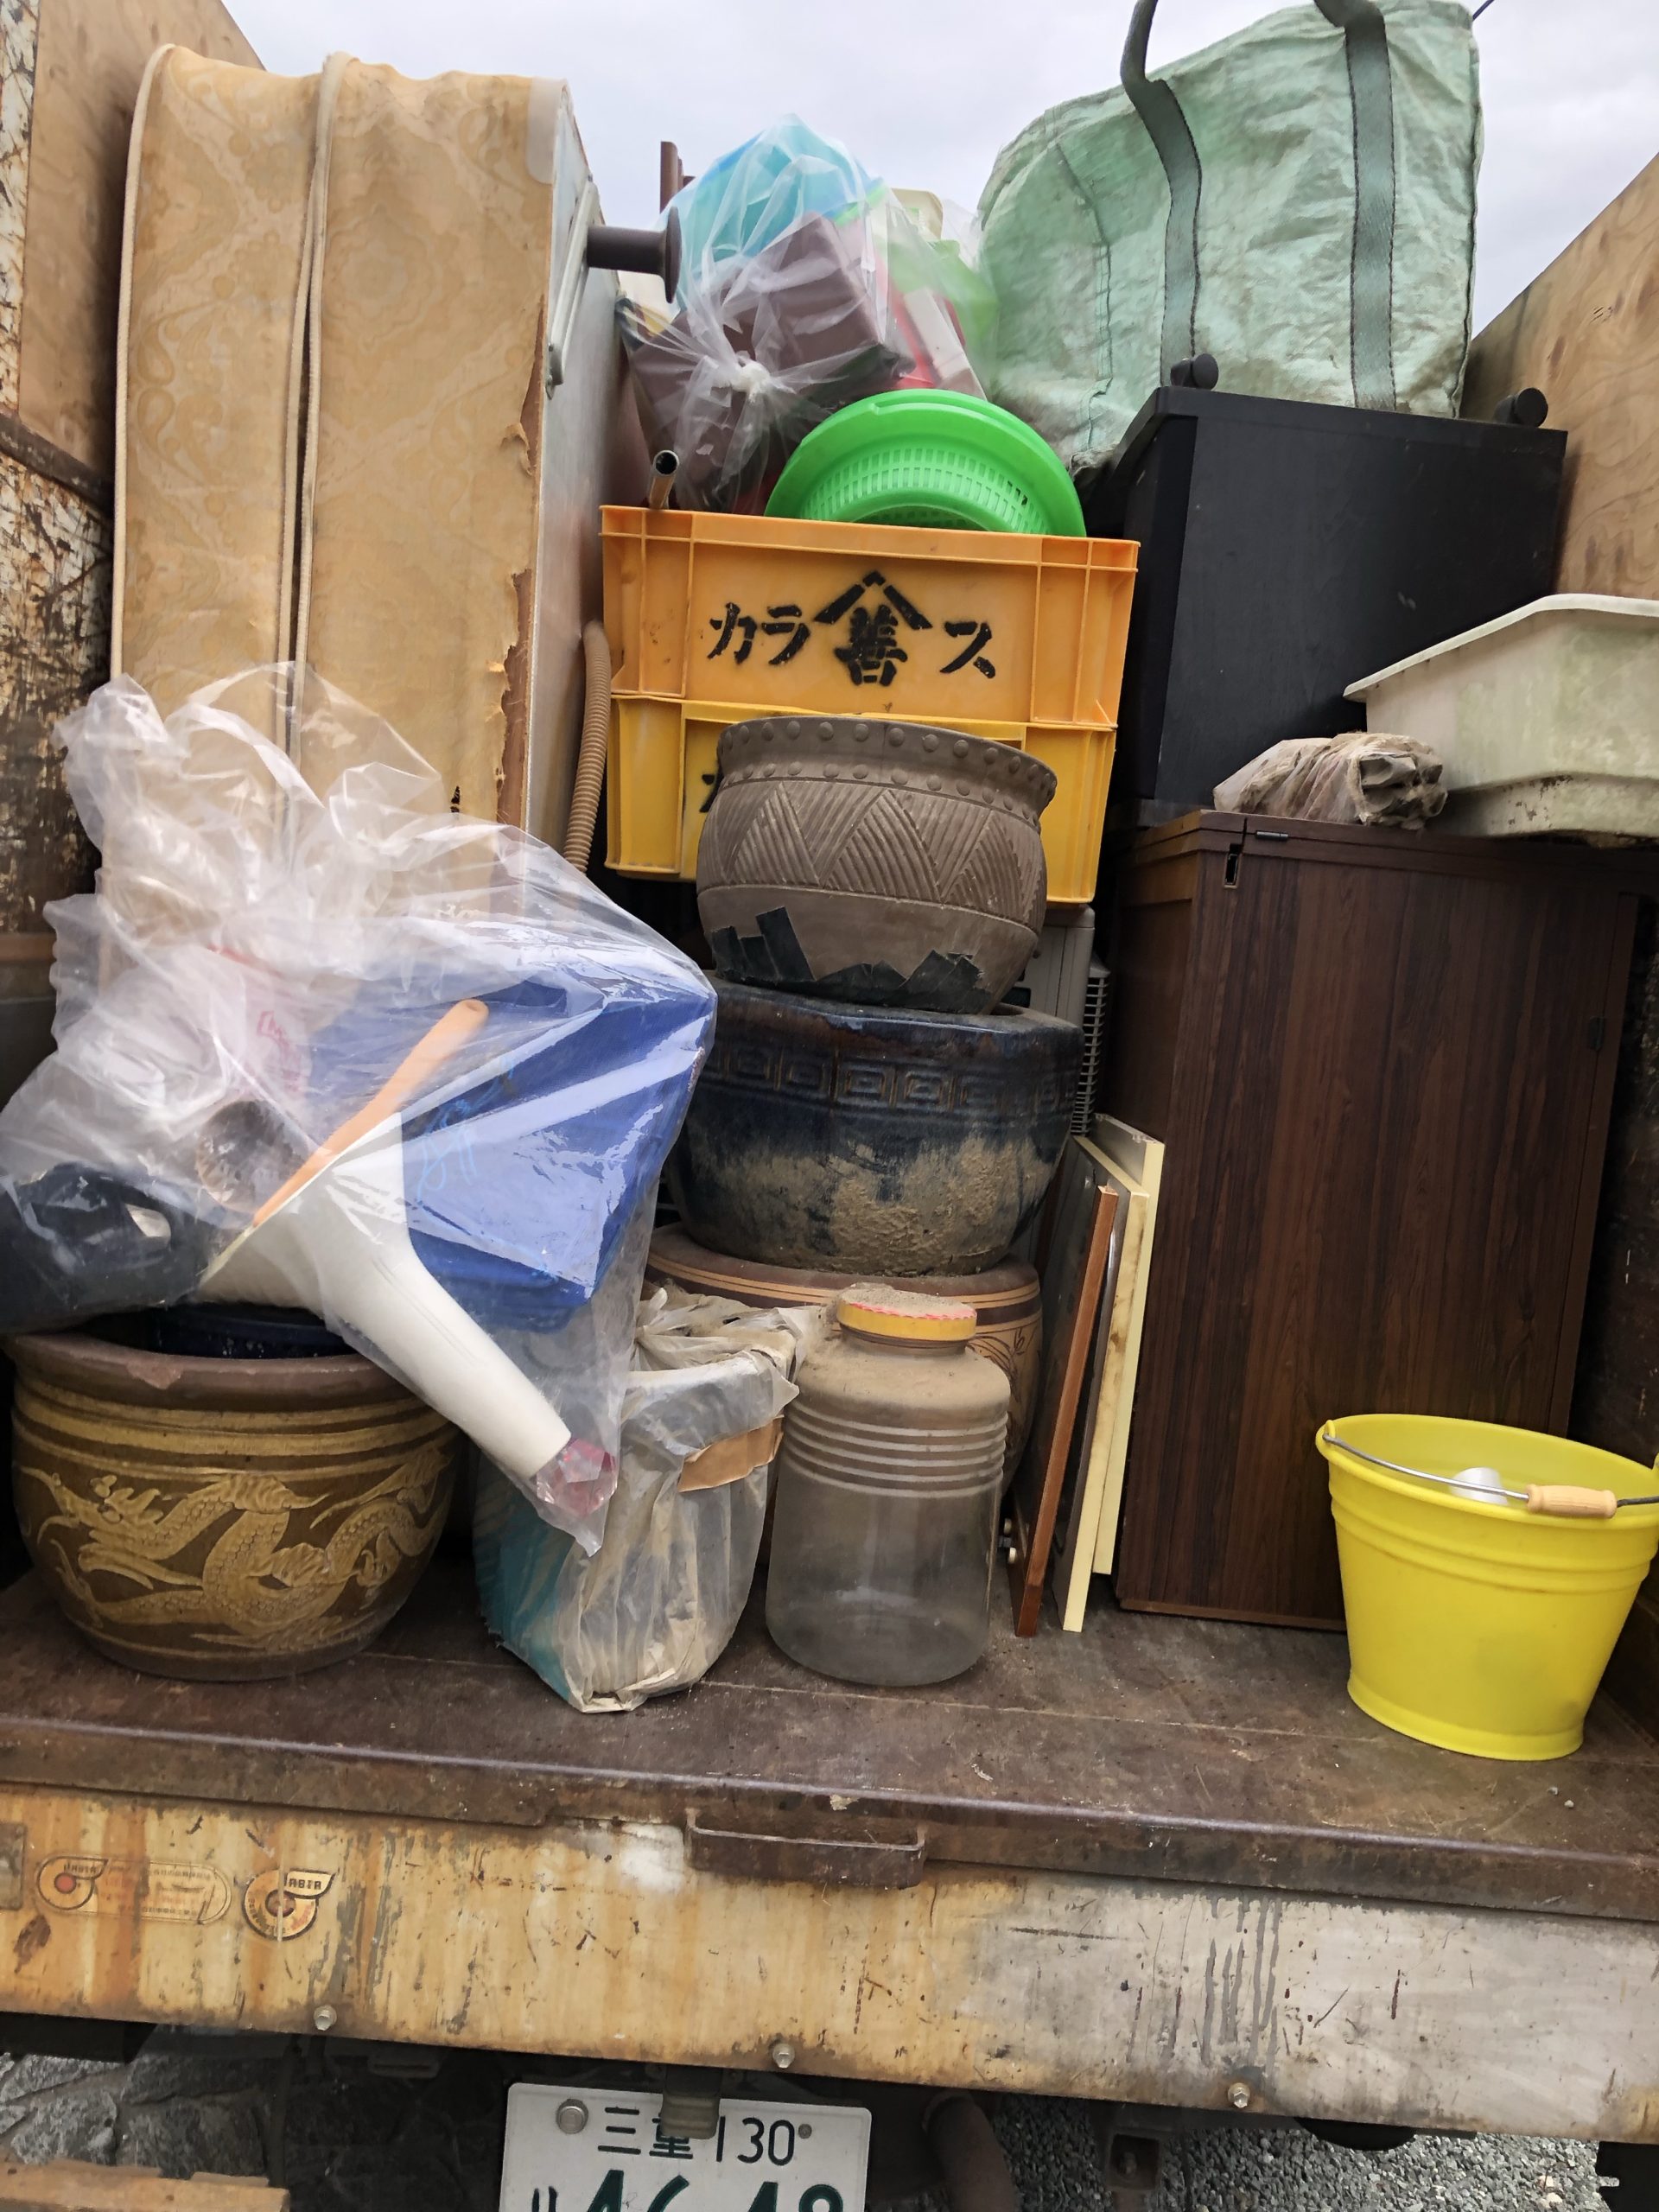 三重県津市で不用品回収や処分のご相談。遺品整理や生前整理、家屋解体工事の見積り業者なら株式会社kousui